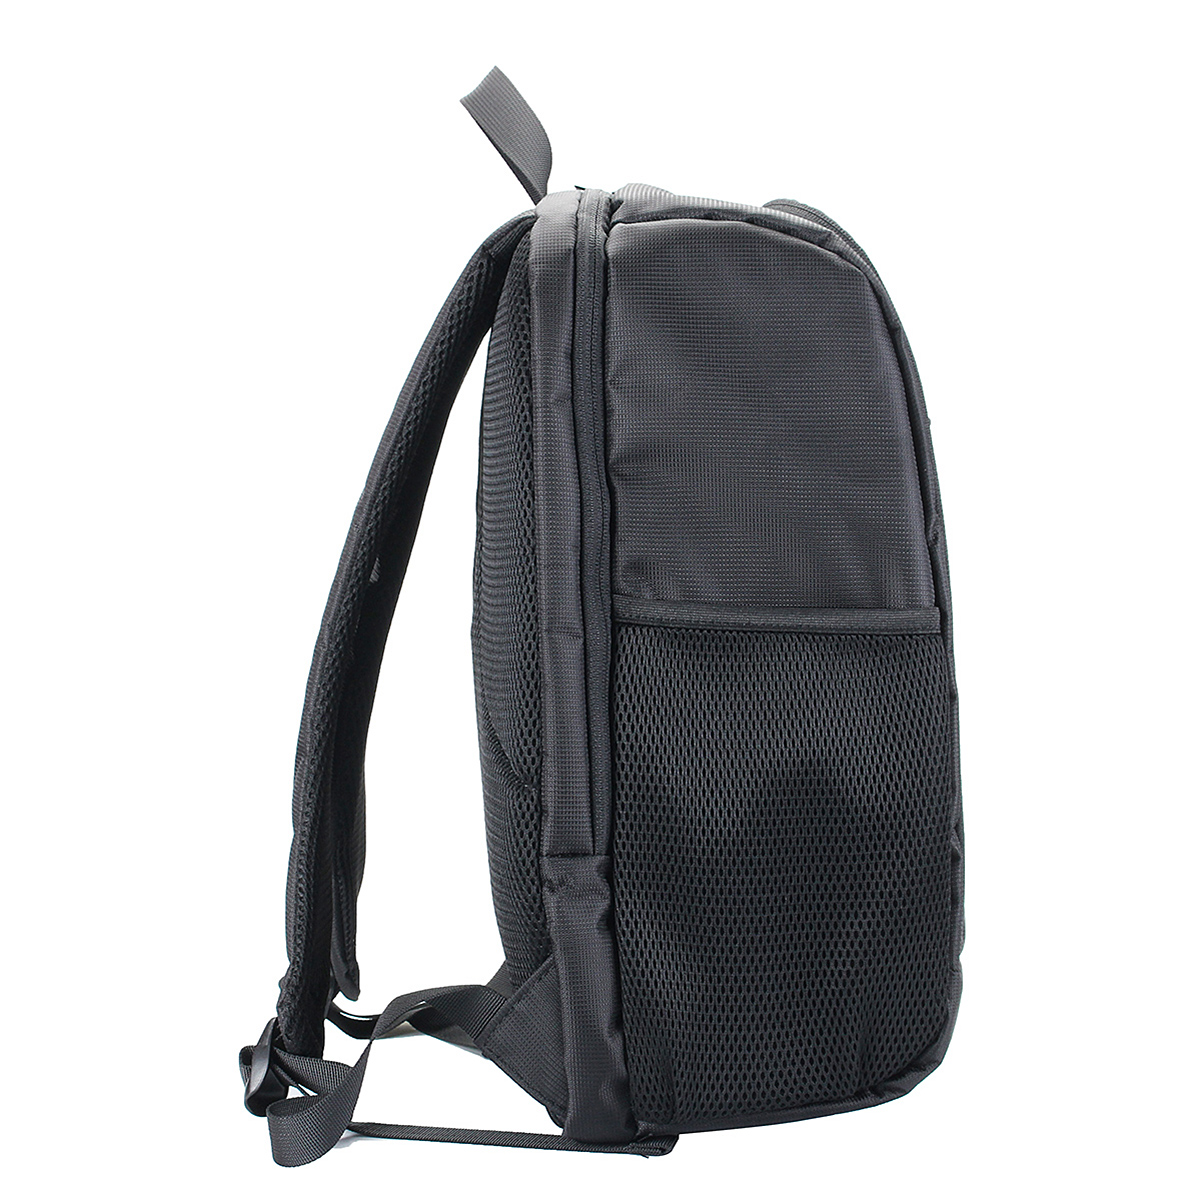 Waterproof Backpack Shoulder Bag Laptop Case For DSLR Camera Lens Accessories 14